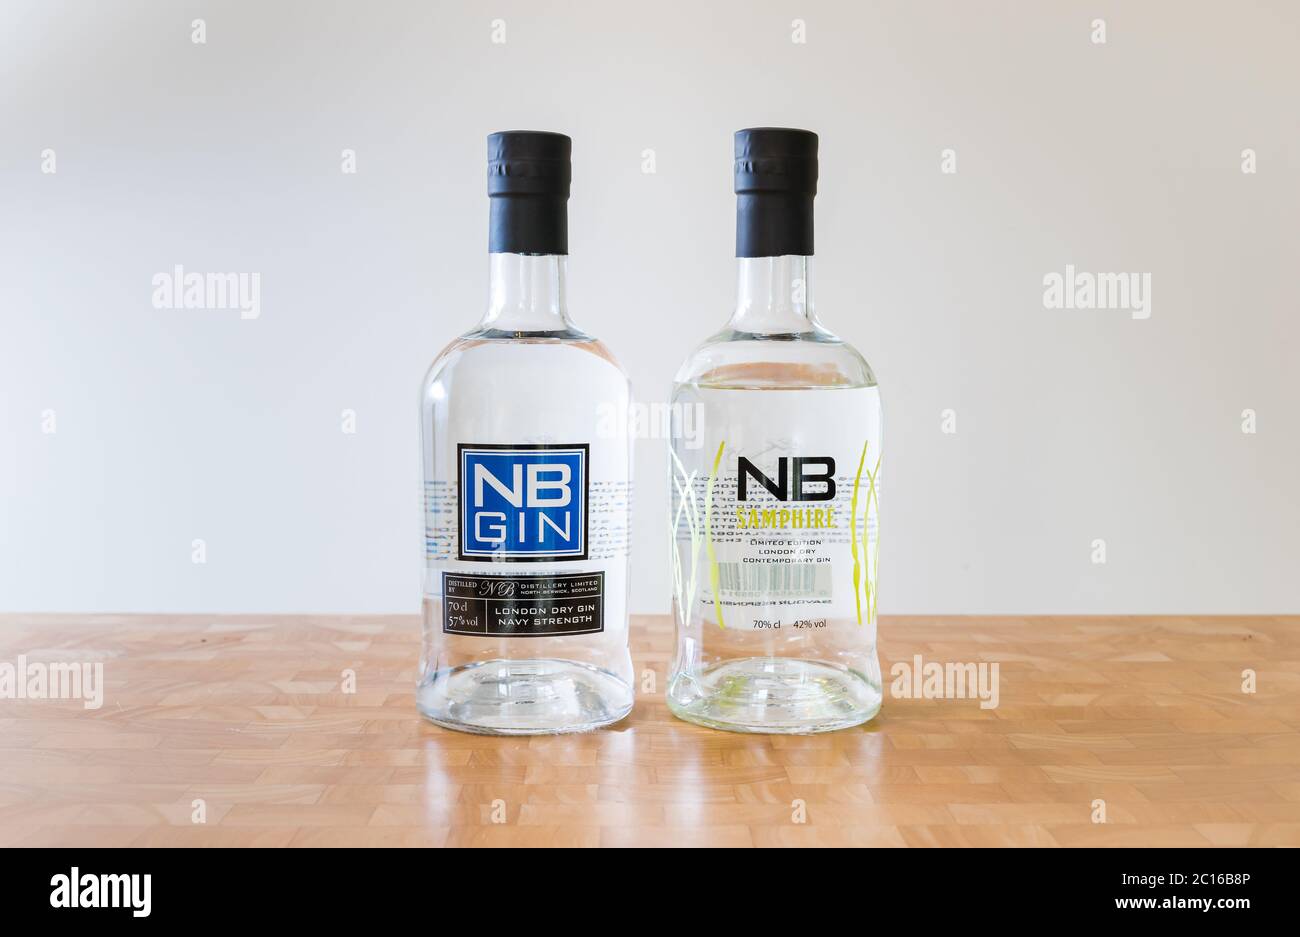 Bottiglie North Berwick o NB gin marca: NB navy forza gin e NB samphire gin Foto Stock